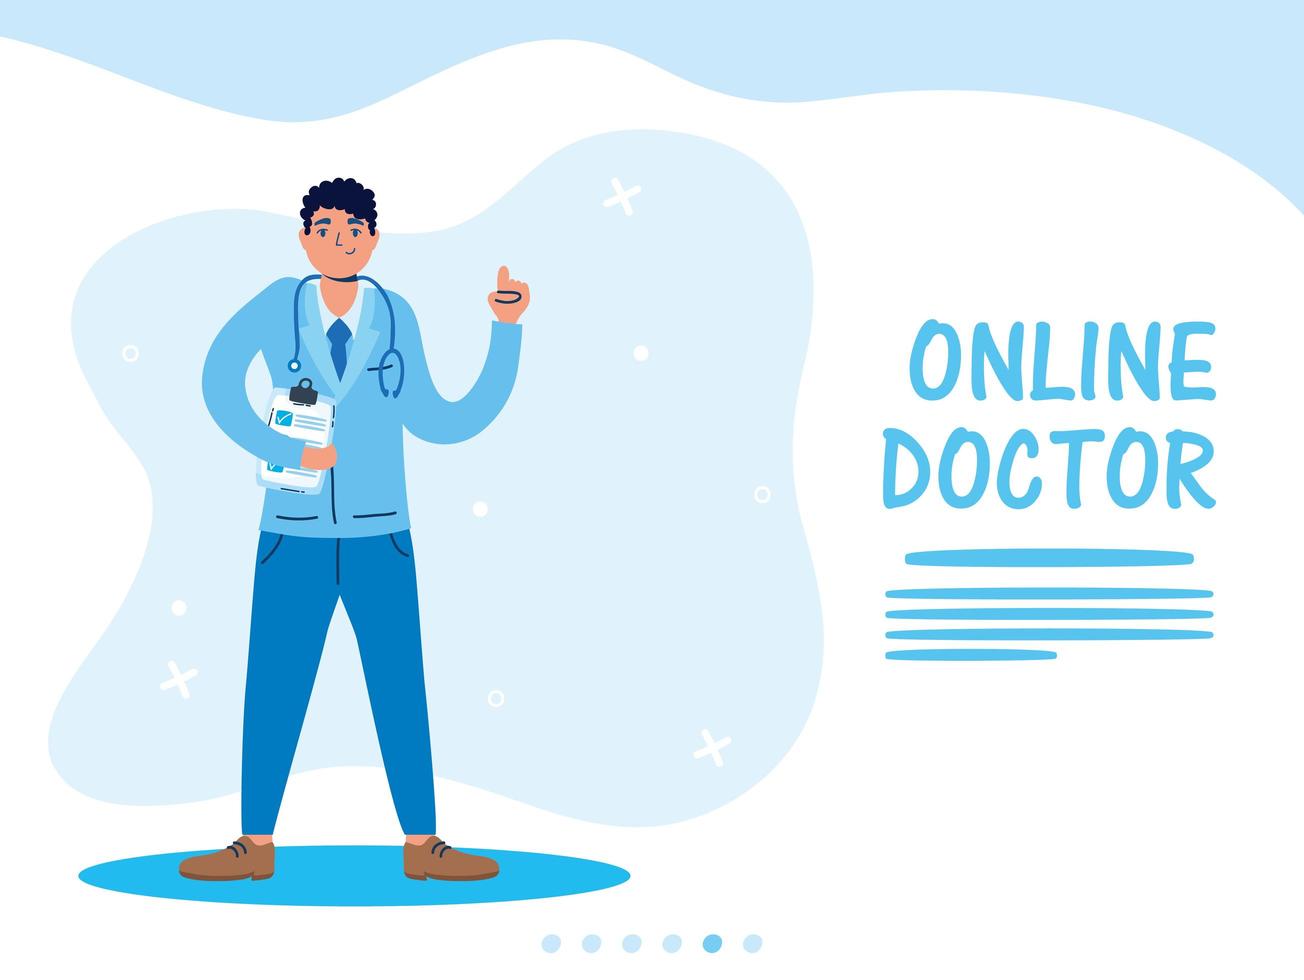 online gezondheidstechnologie met dokterskarakter vector